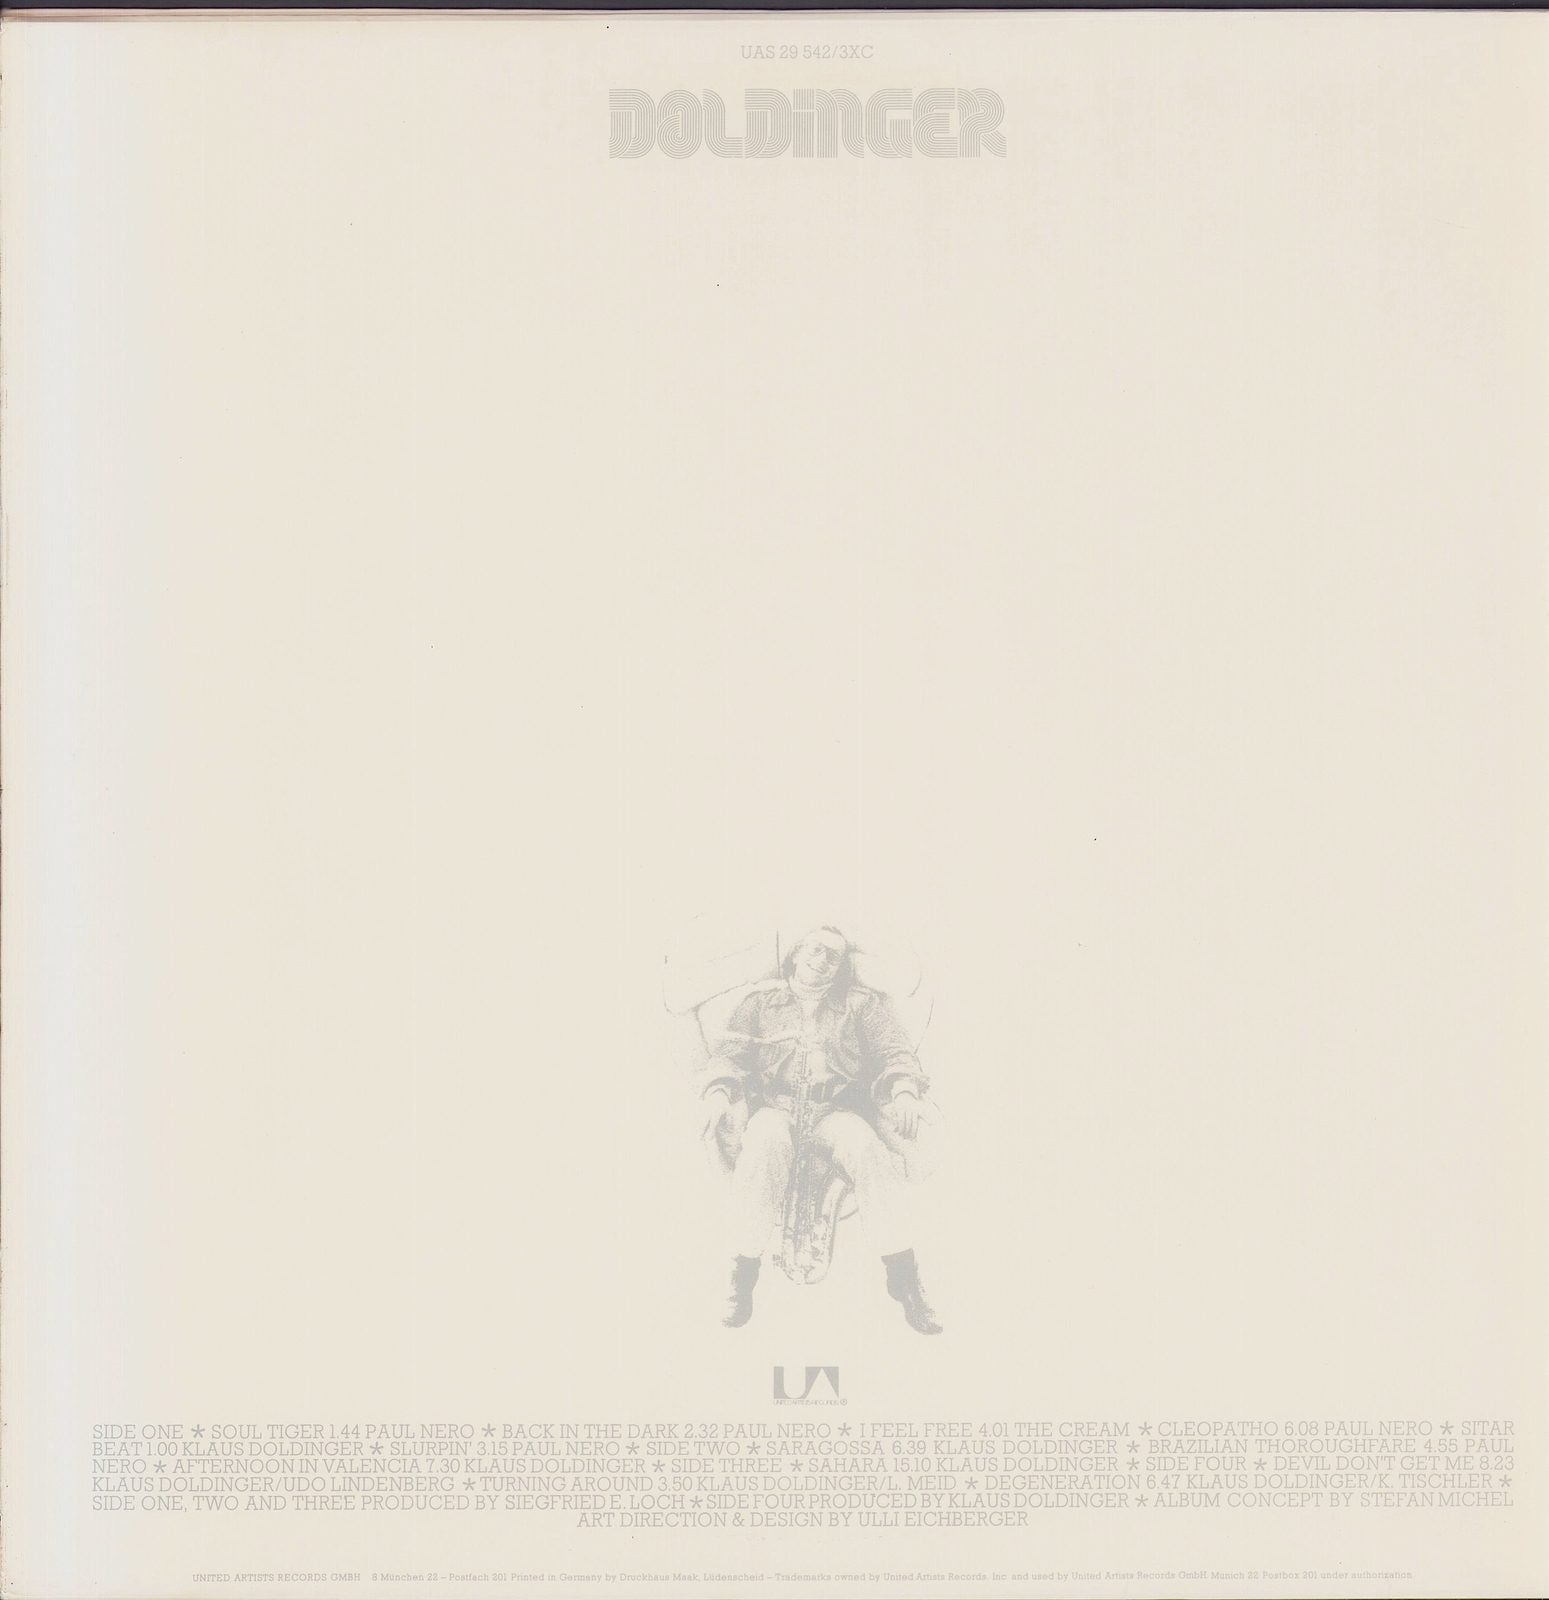 Klaus Doldinger ‎- Doldinger Vinyl 2LP DE